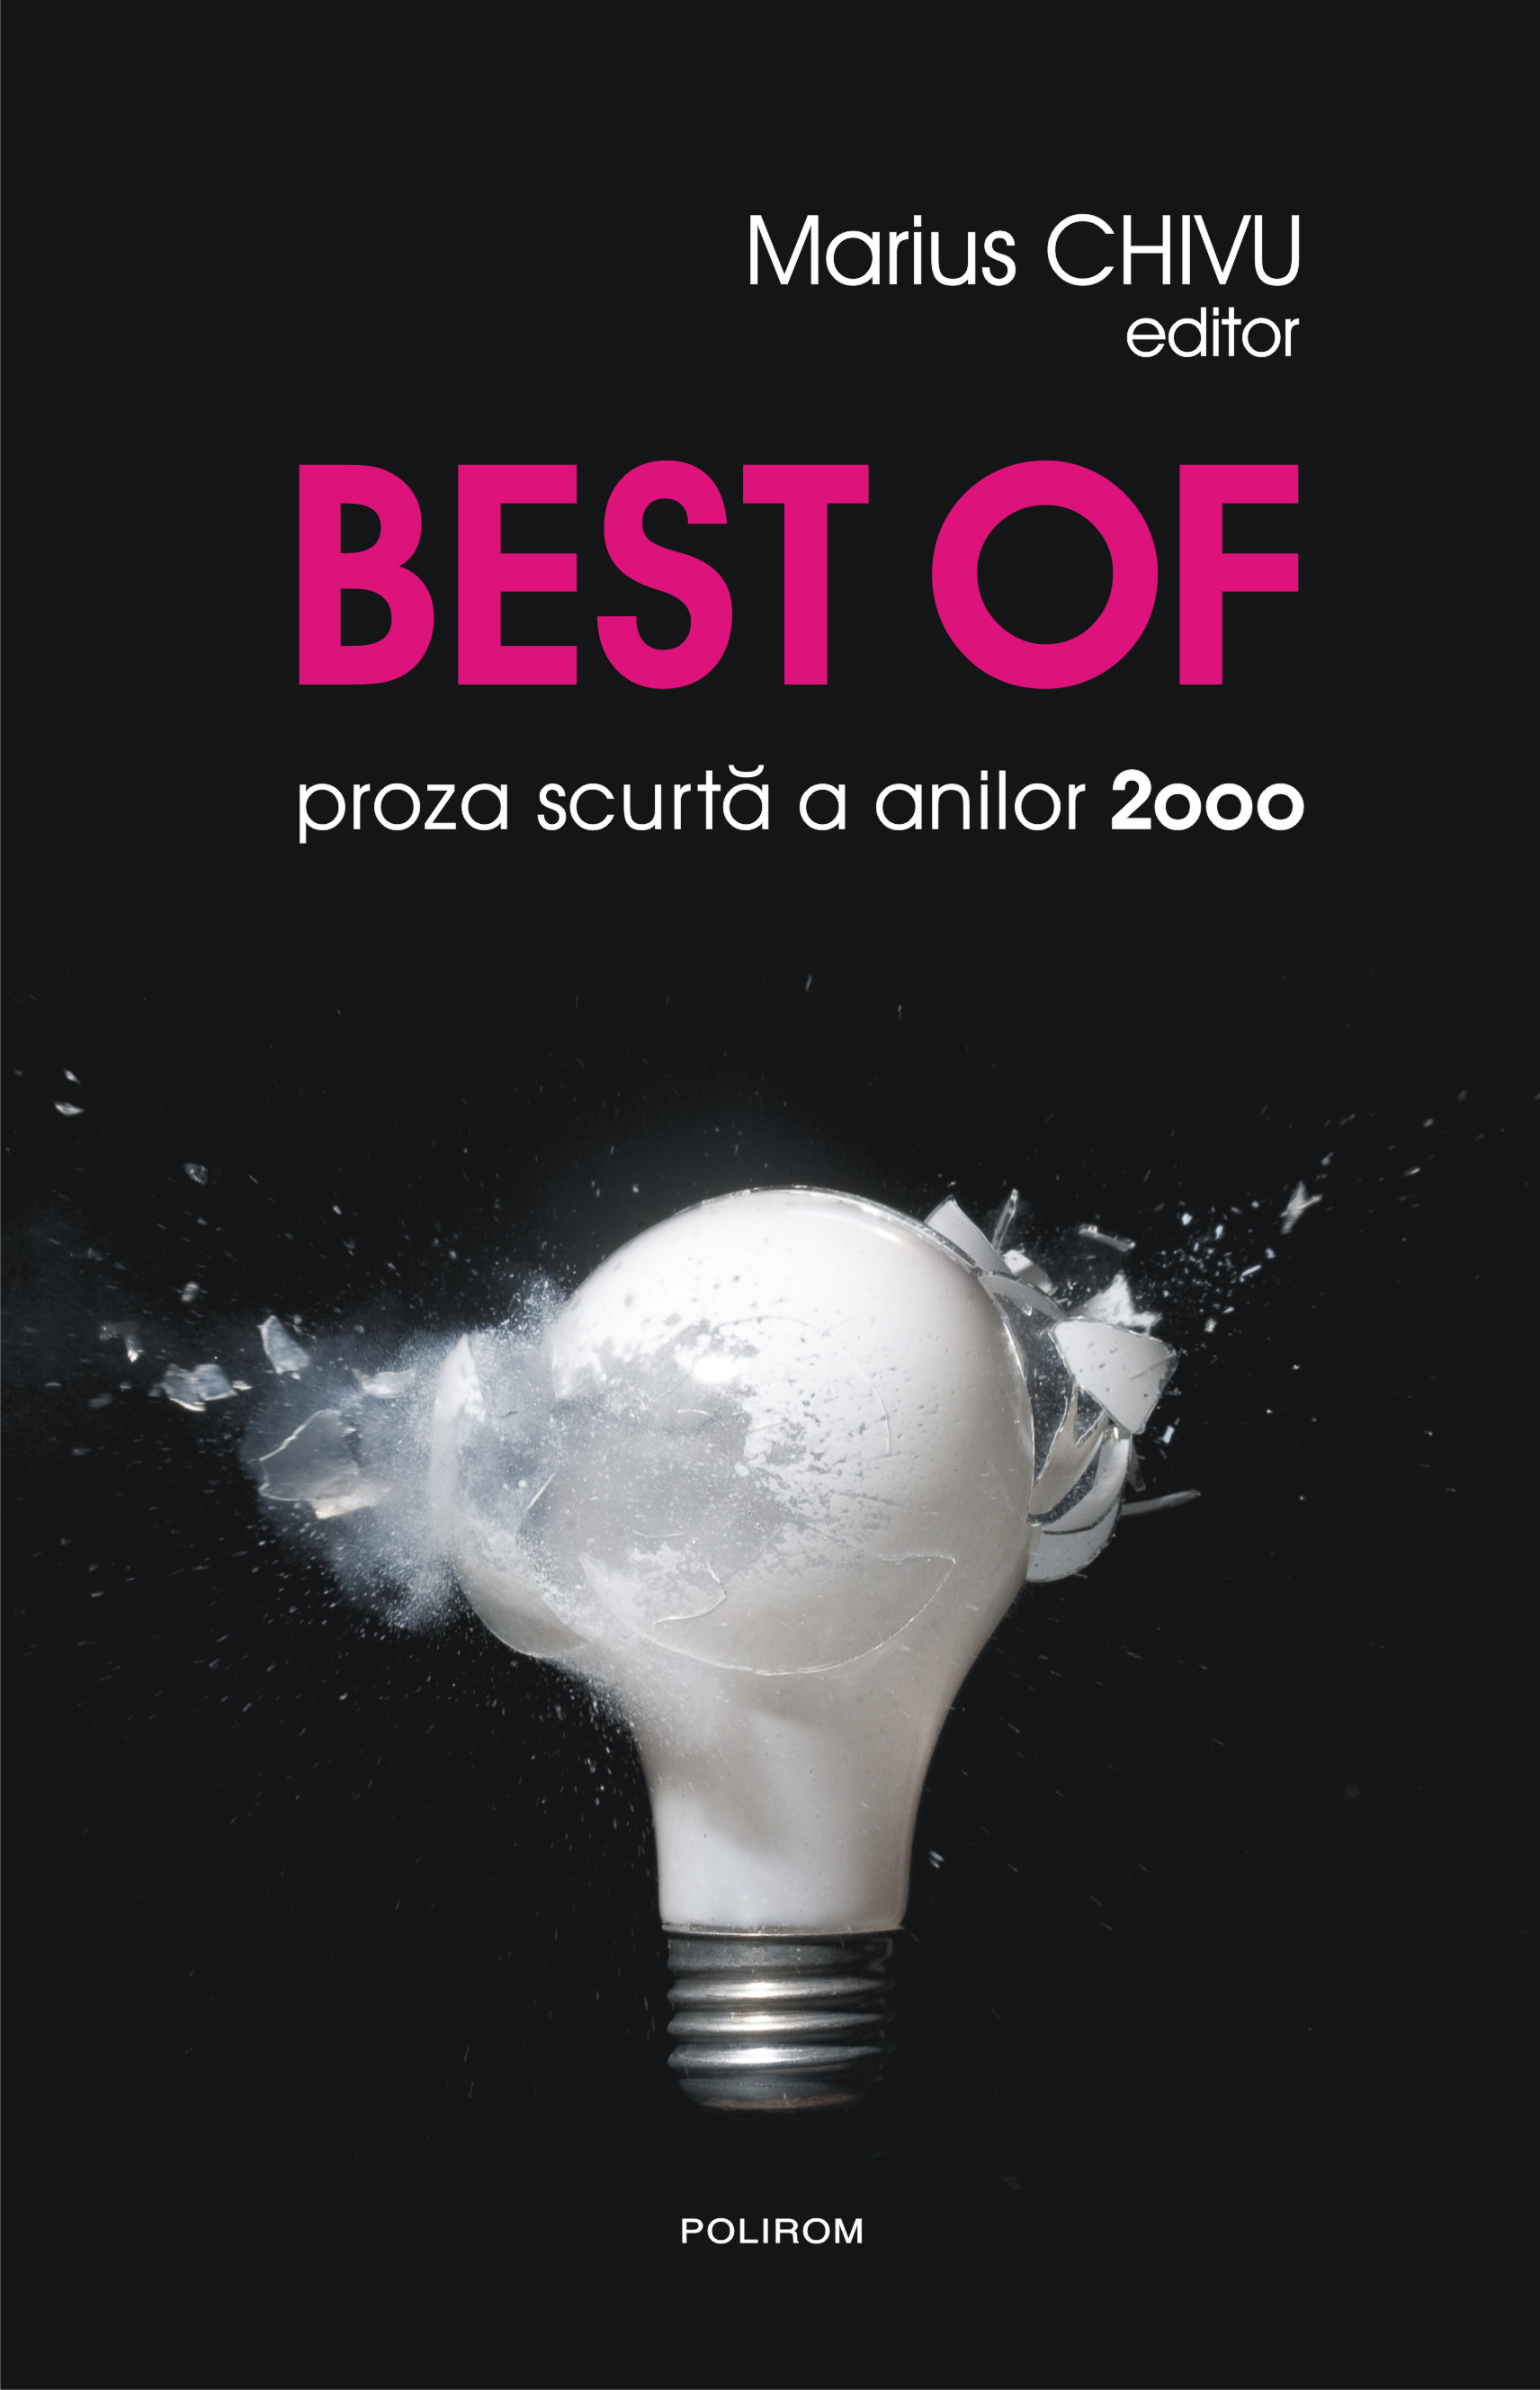 eBook Best of proza scurta a anilor 2000 - Marius (ed.) Chivu